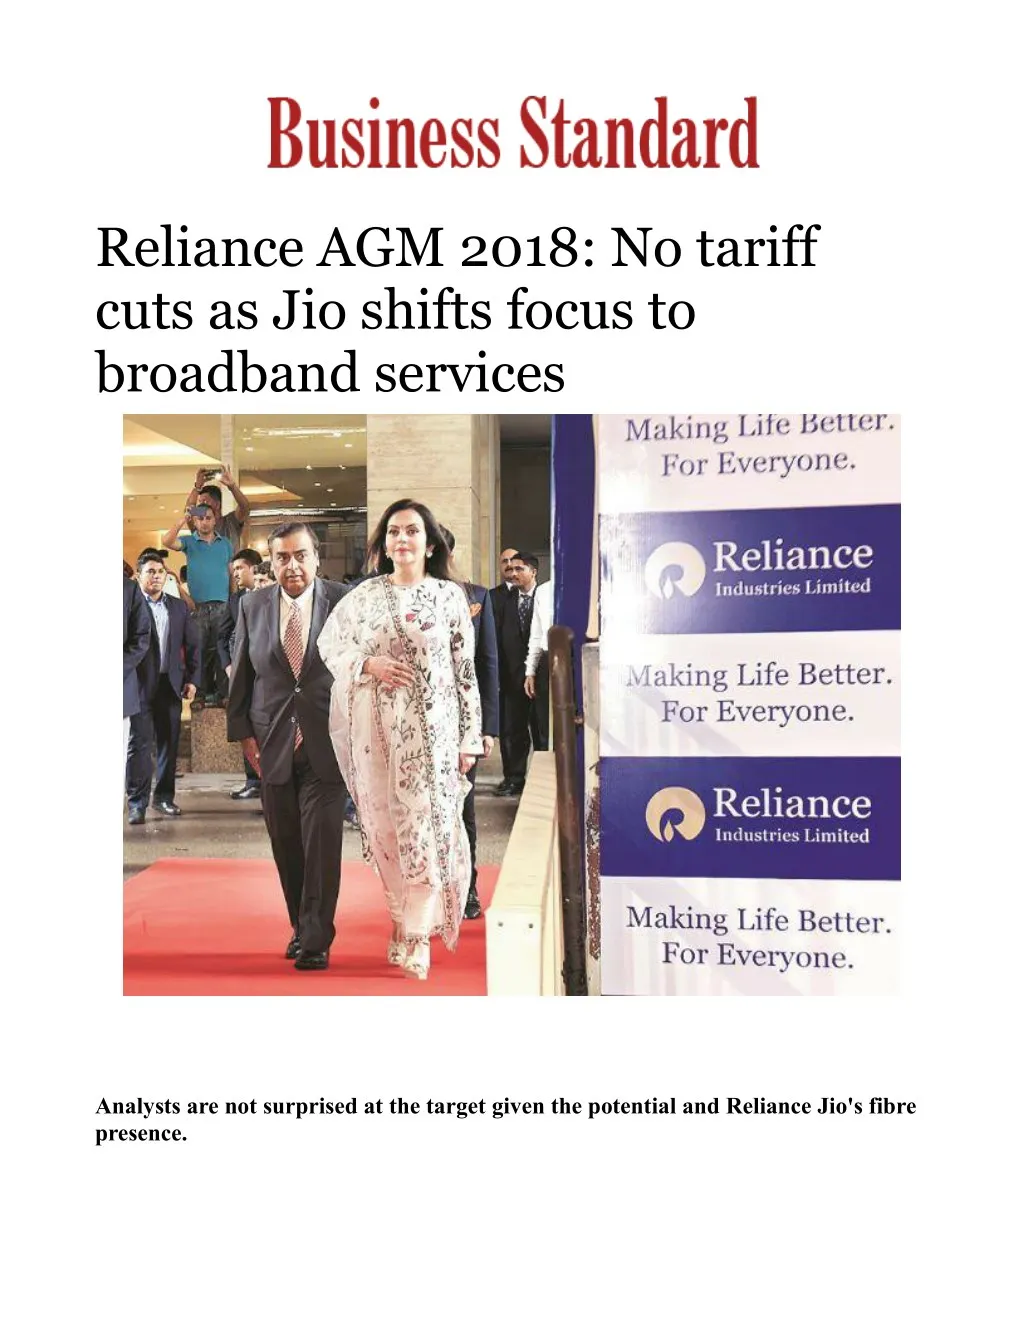 reliance agm 2018 no tariff cuts as jio shifts